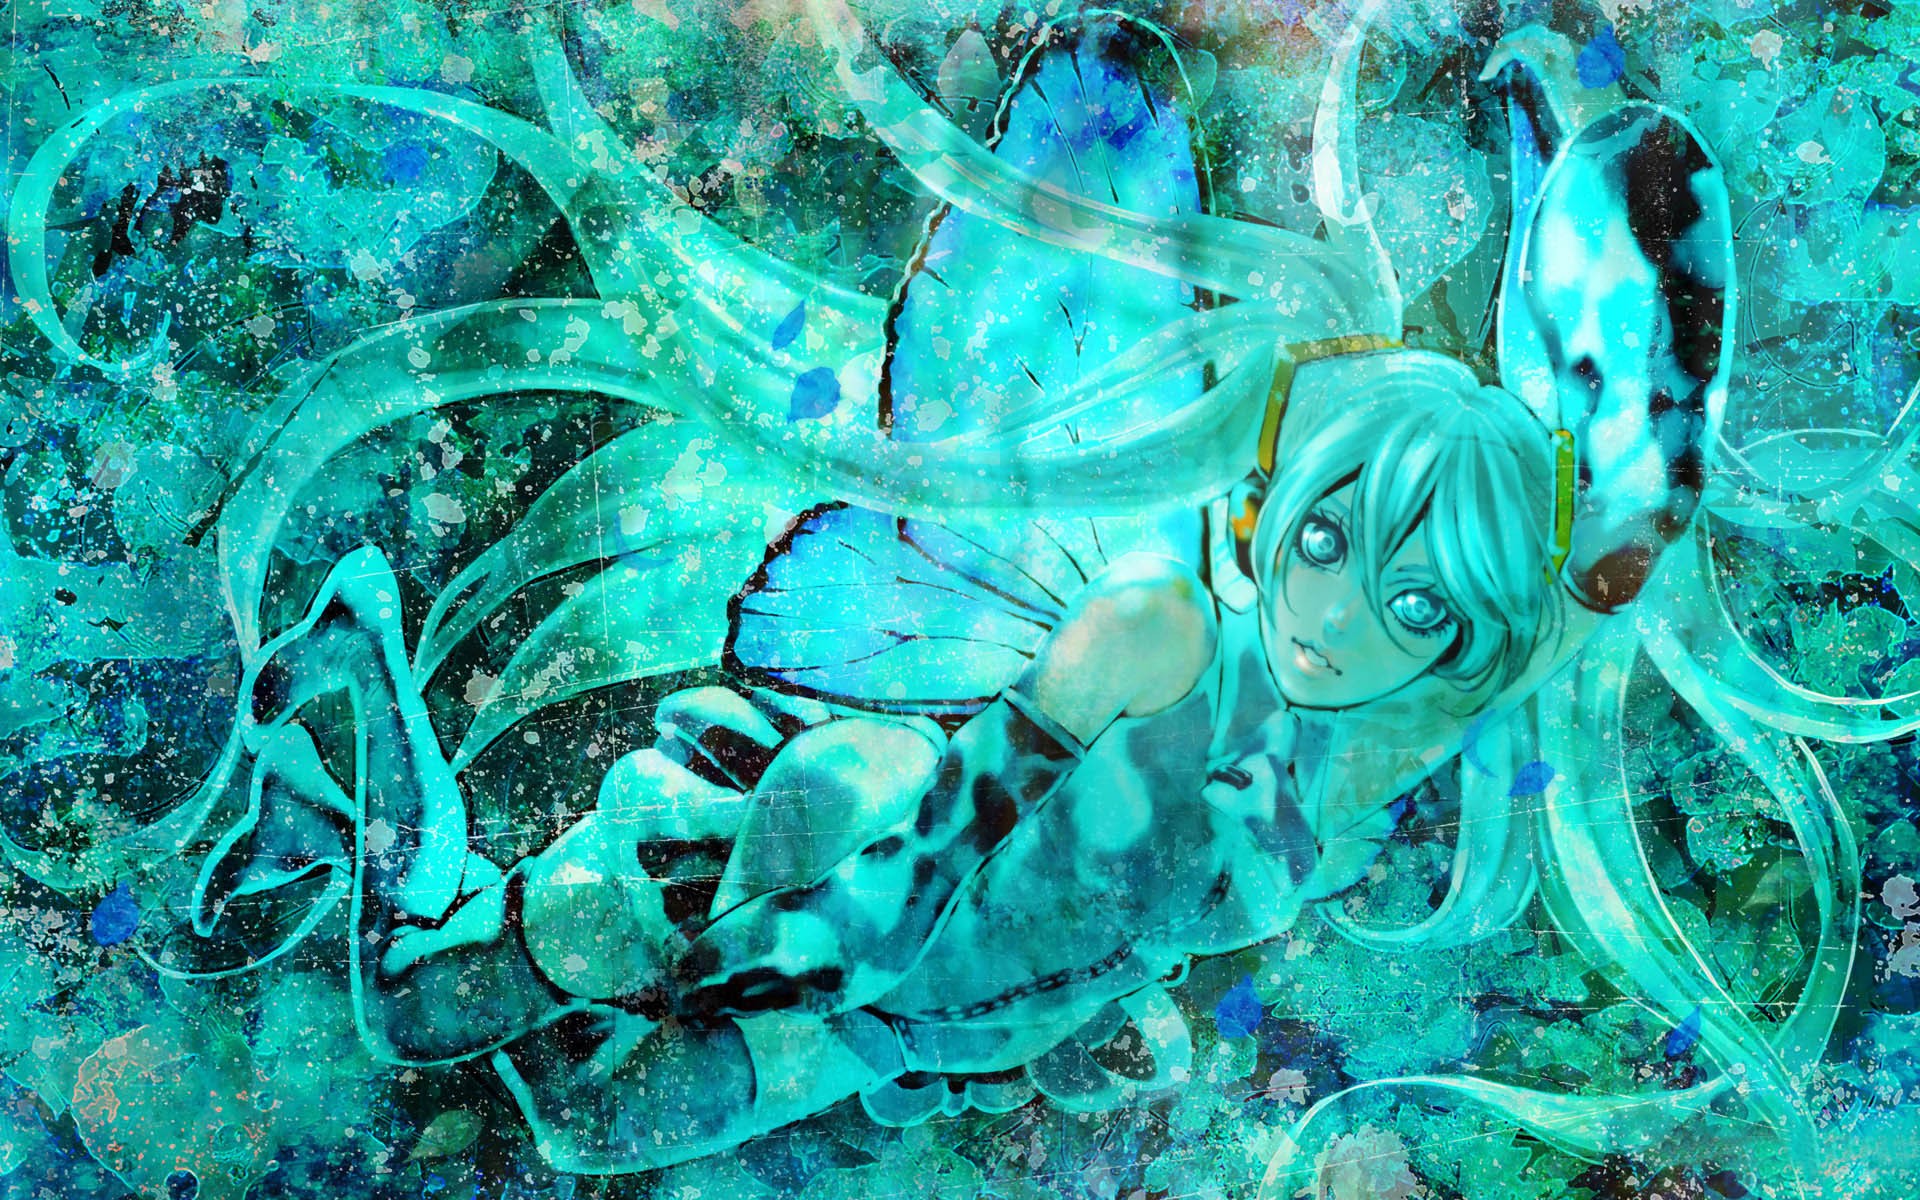 Hatsune Miku, Vocaloid Wallpaper